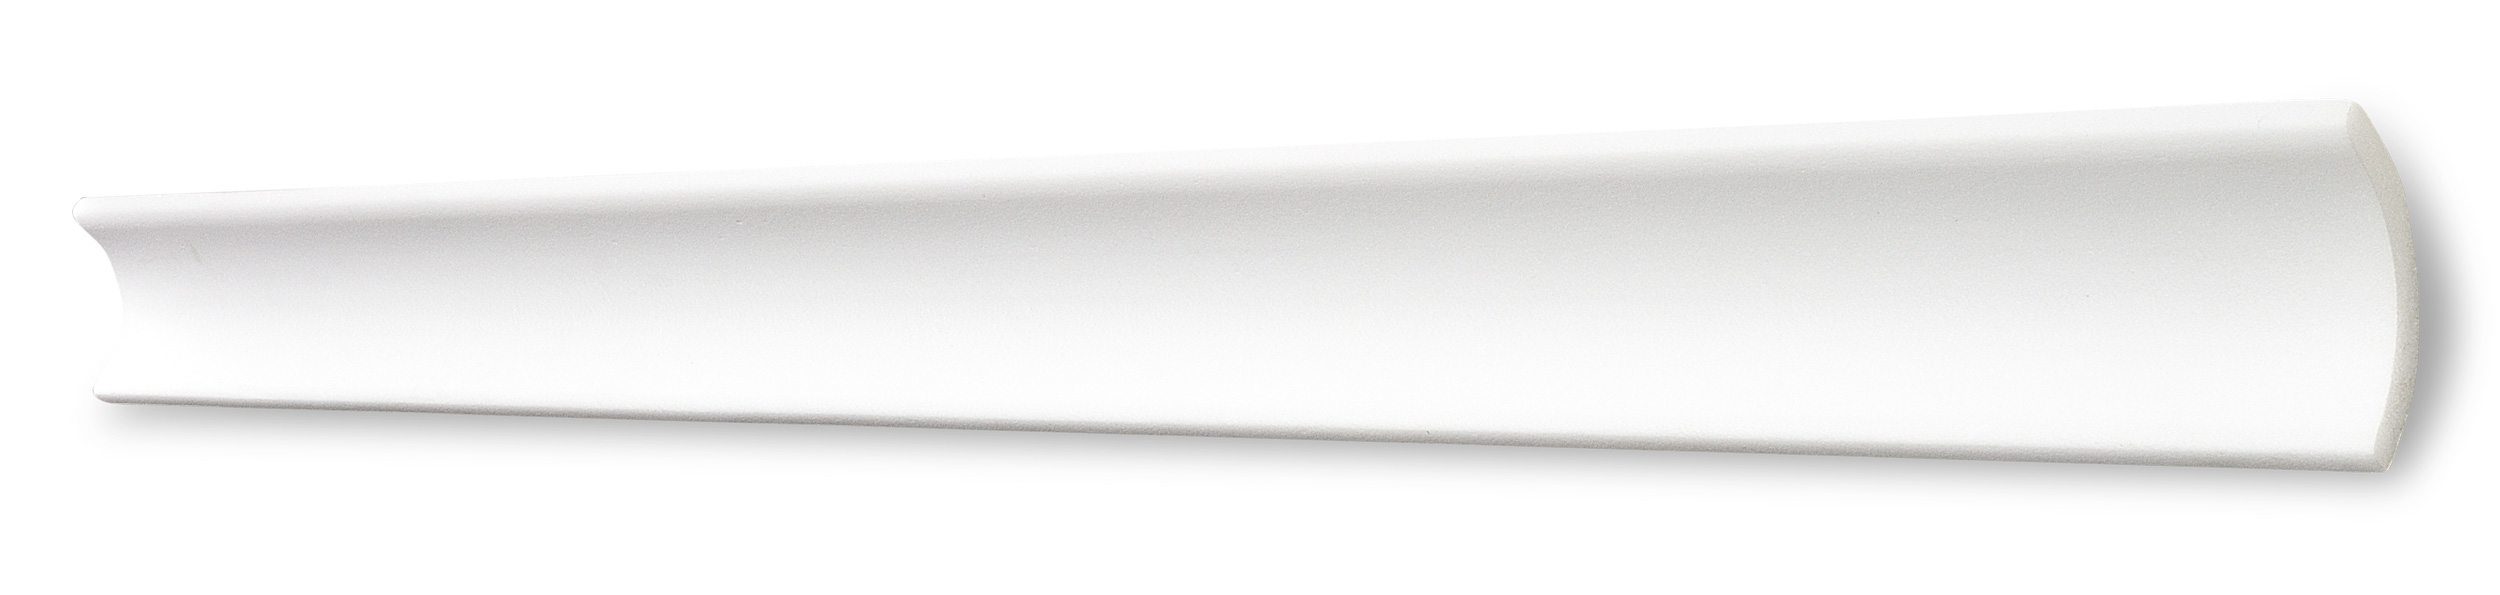 DECOSA Moulure B5 - polystyrène - blanc - 35 x 35 mm - longueur 2 m